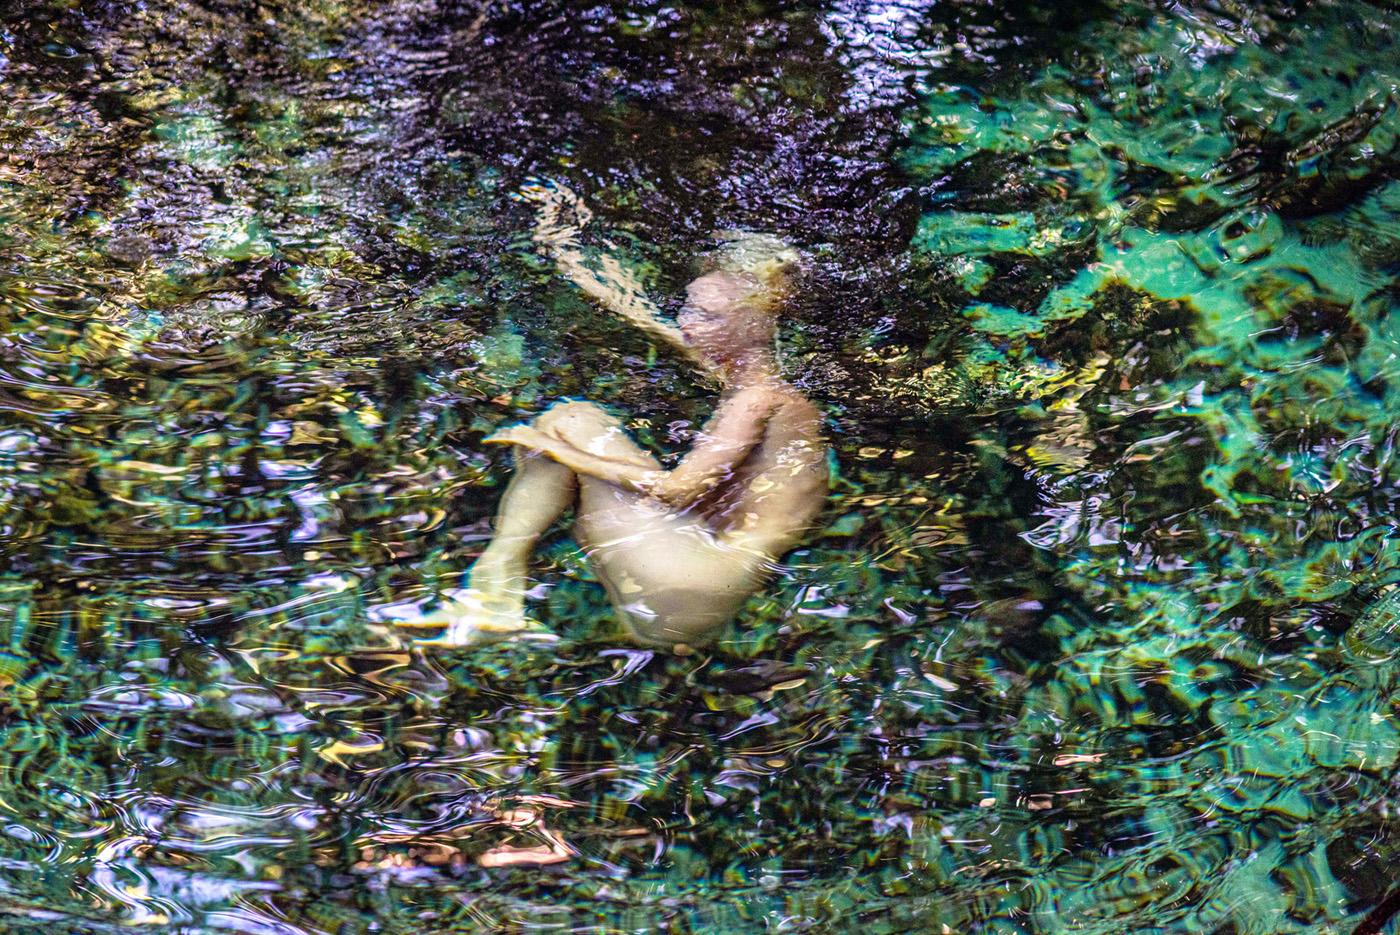 John Mazlish Nude Photograph – „Rebirth“ – farbenfroher Akt in Wasserfotografie